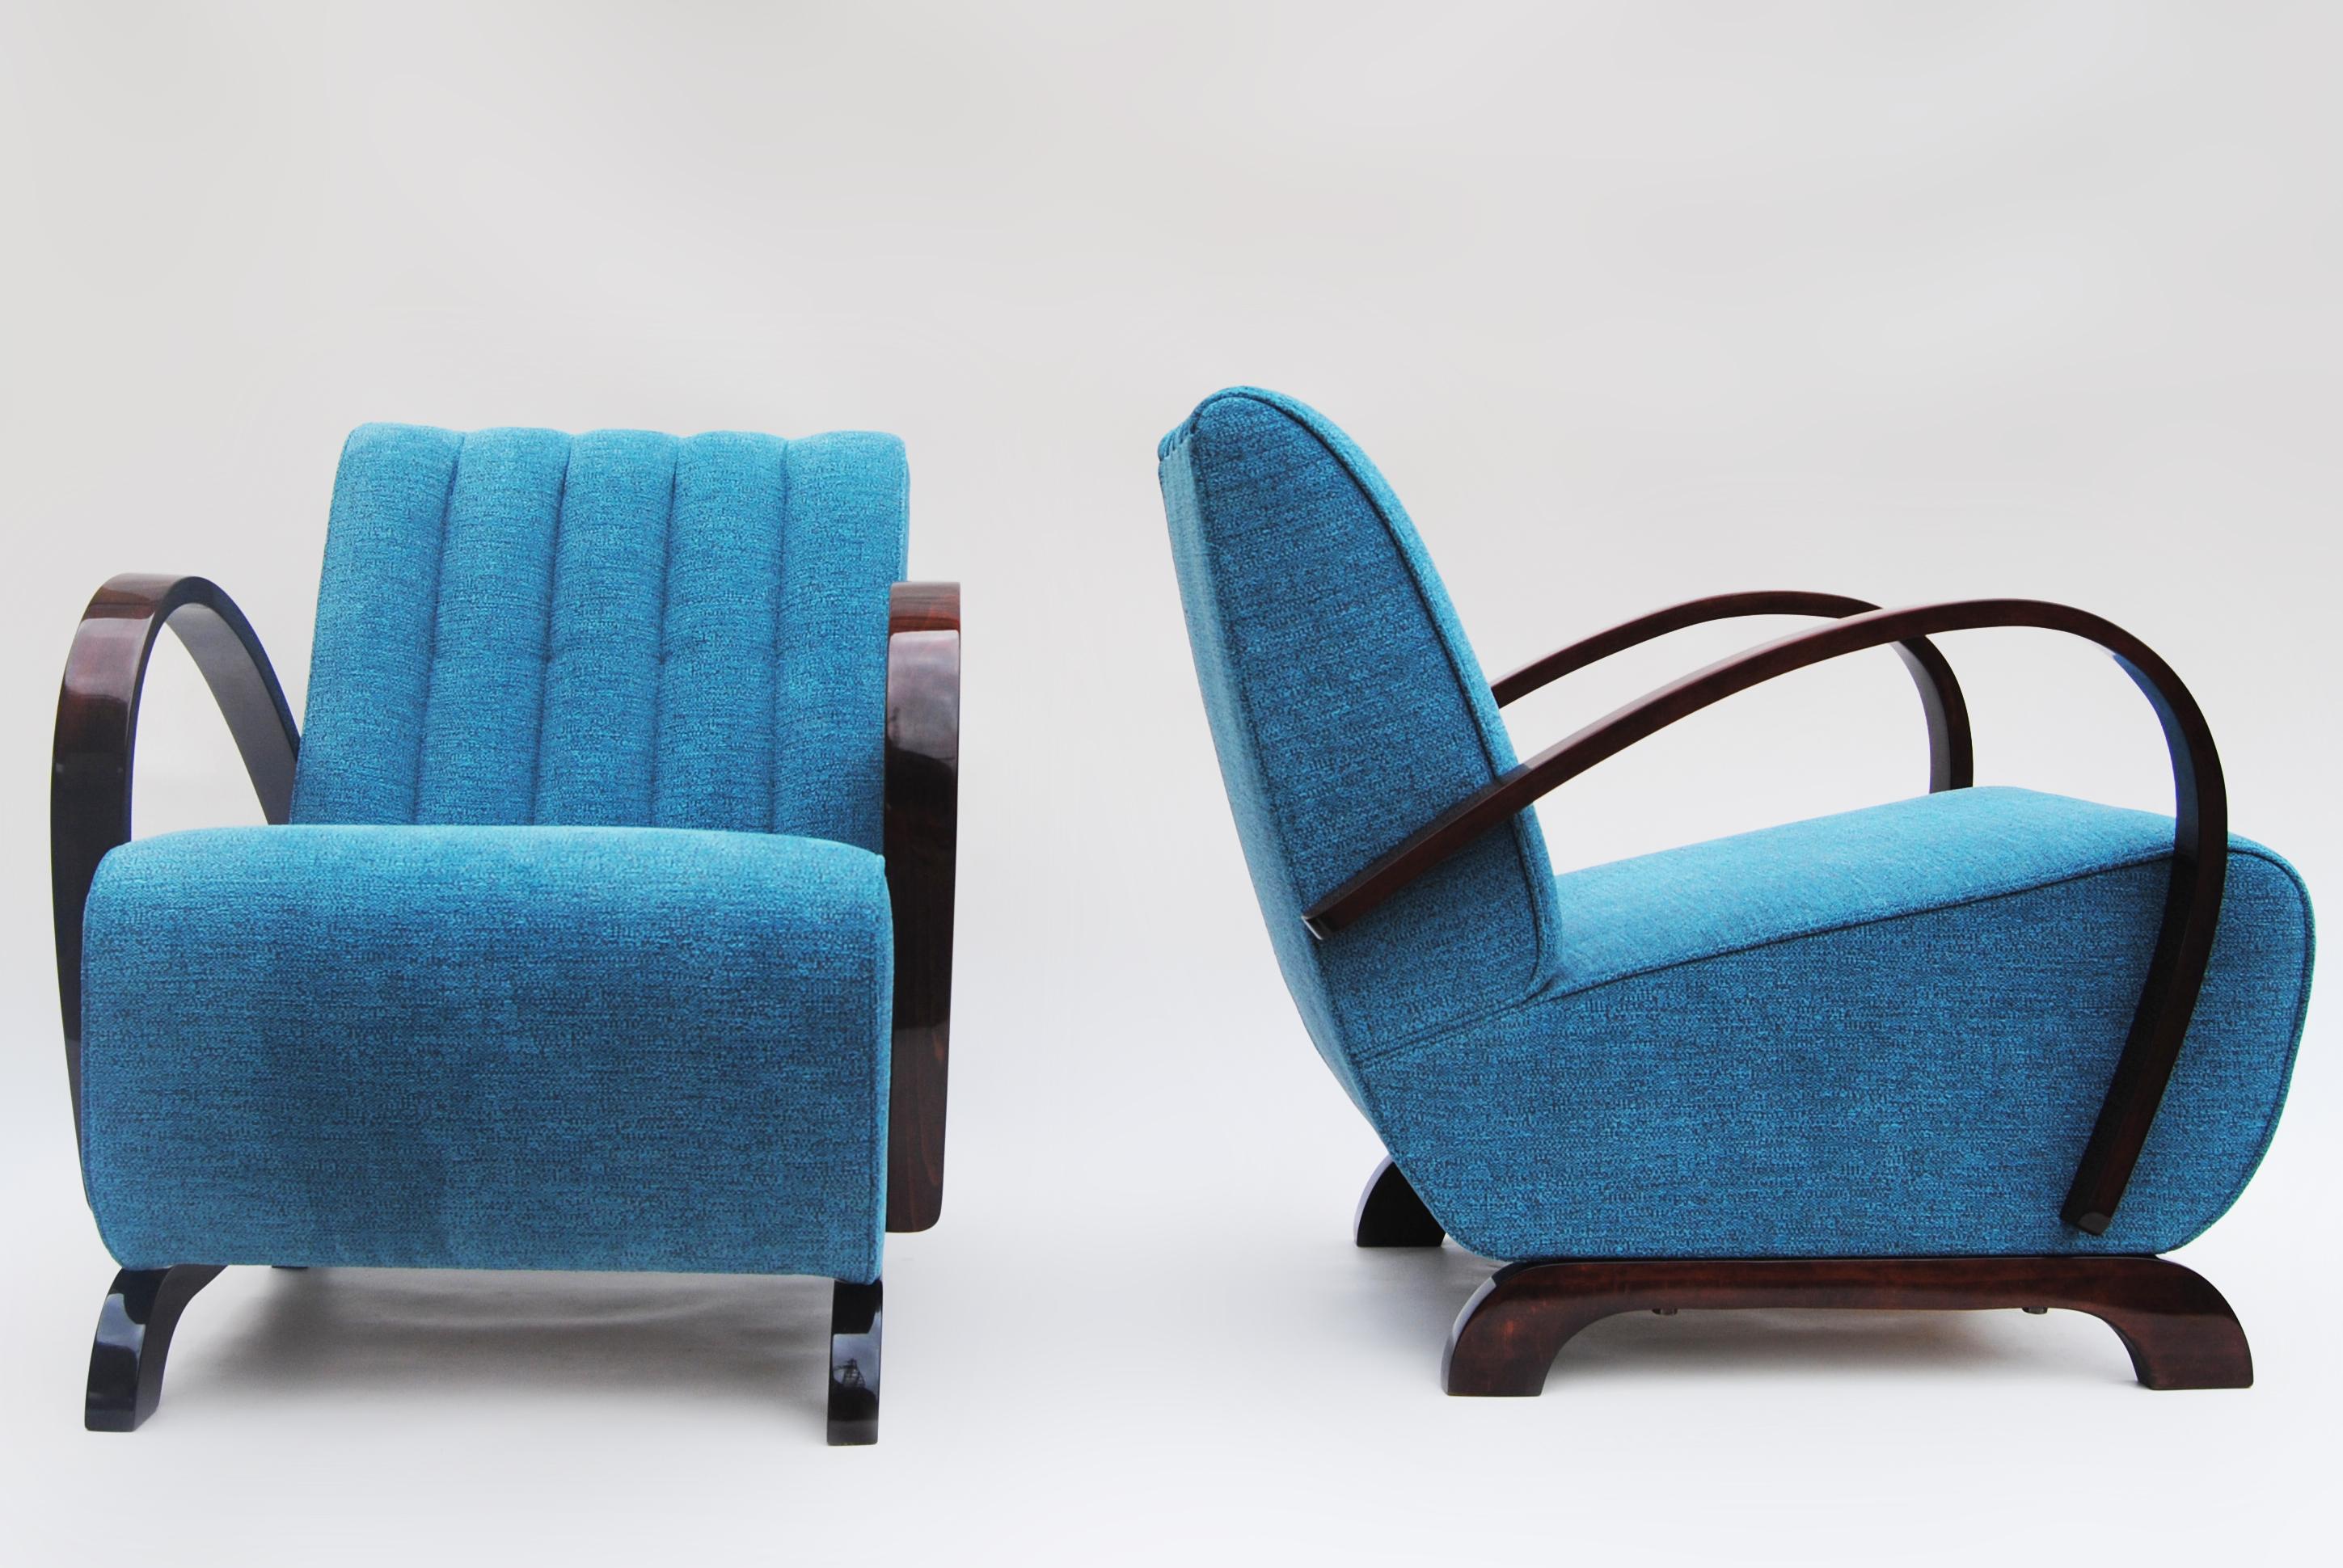 Art Deco Sesselpaar entworfen von Jindrich Halabala

Zeitraum: 1930-1939
Designer: Jindrich Halabala
Schöpfer: UP Zavody
Quelle: Tschechische Republik (Tschechoslowakei)
MATERIAL: Nussbaum

Bei diesen Sesseln ist es möglich, den Stoff (Leder) und